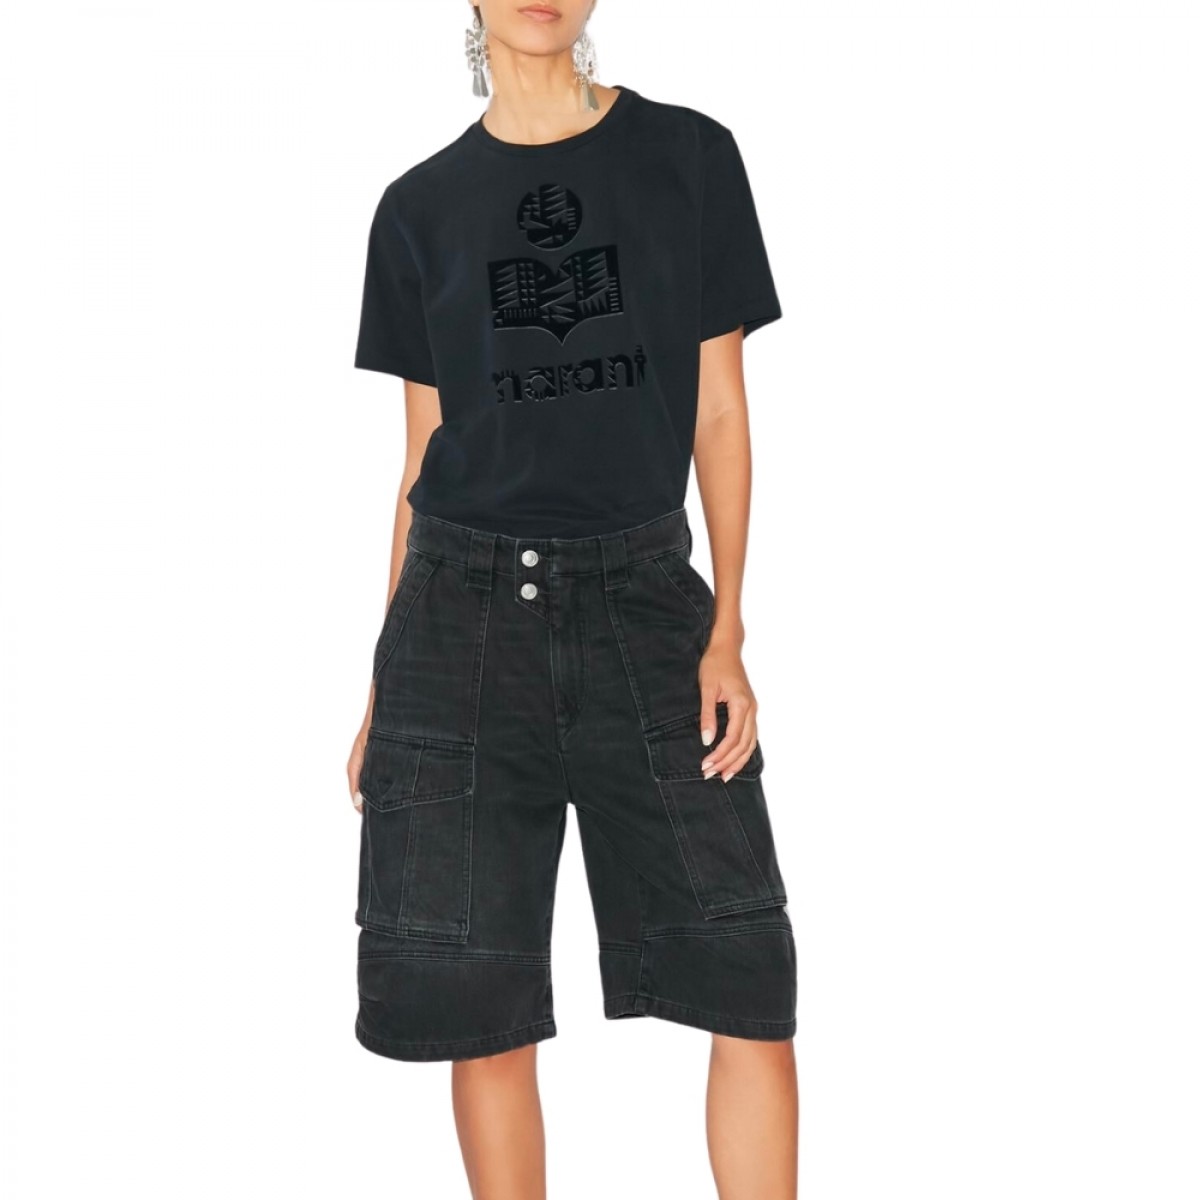 zewel t-shirt - black -model look